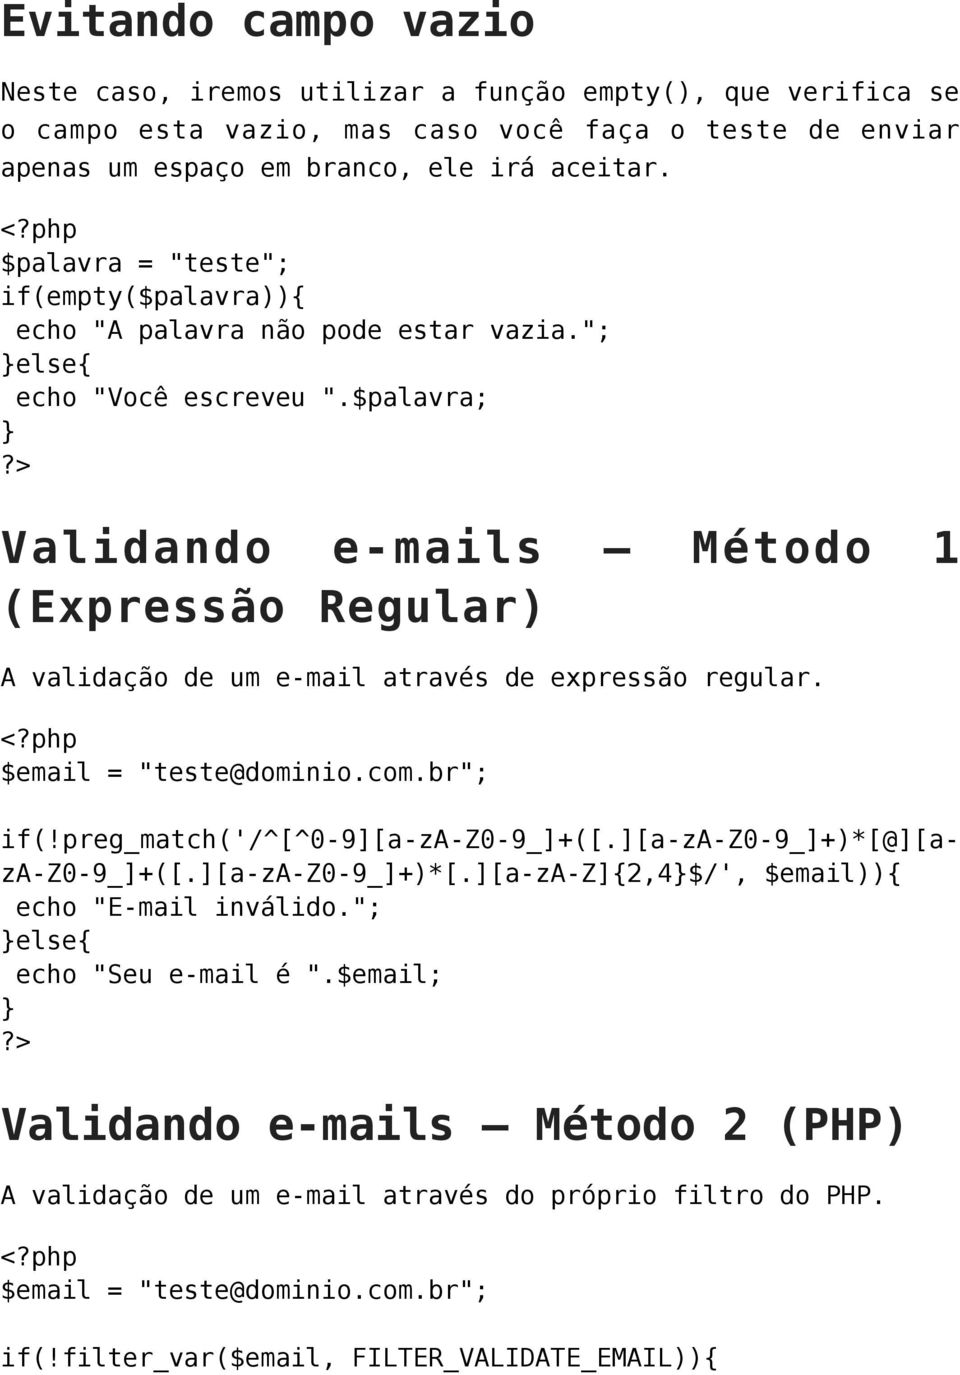 $palavra; Validando e-mails Método 1 (Expressão Regular) A validação de um e-mail através de expressão regular. $email = "teste@dominio.com.br"; if(!preg_match('/^[^0-9][a-za-z0-9_]+([.